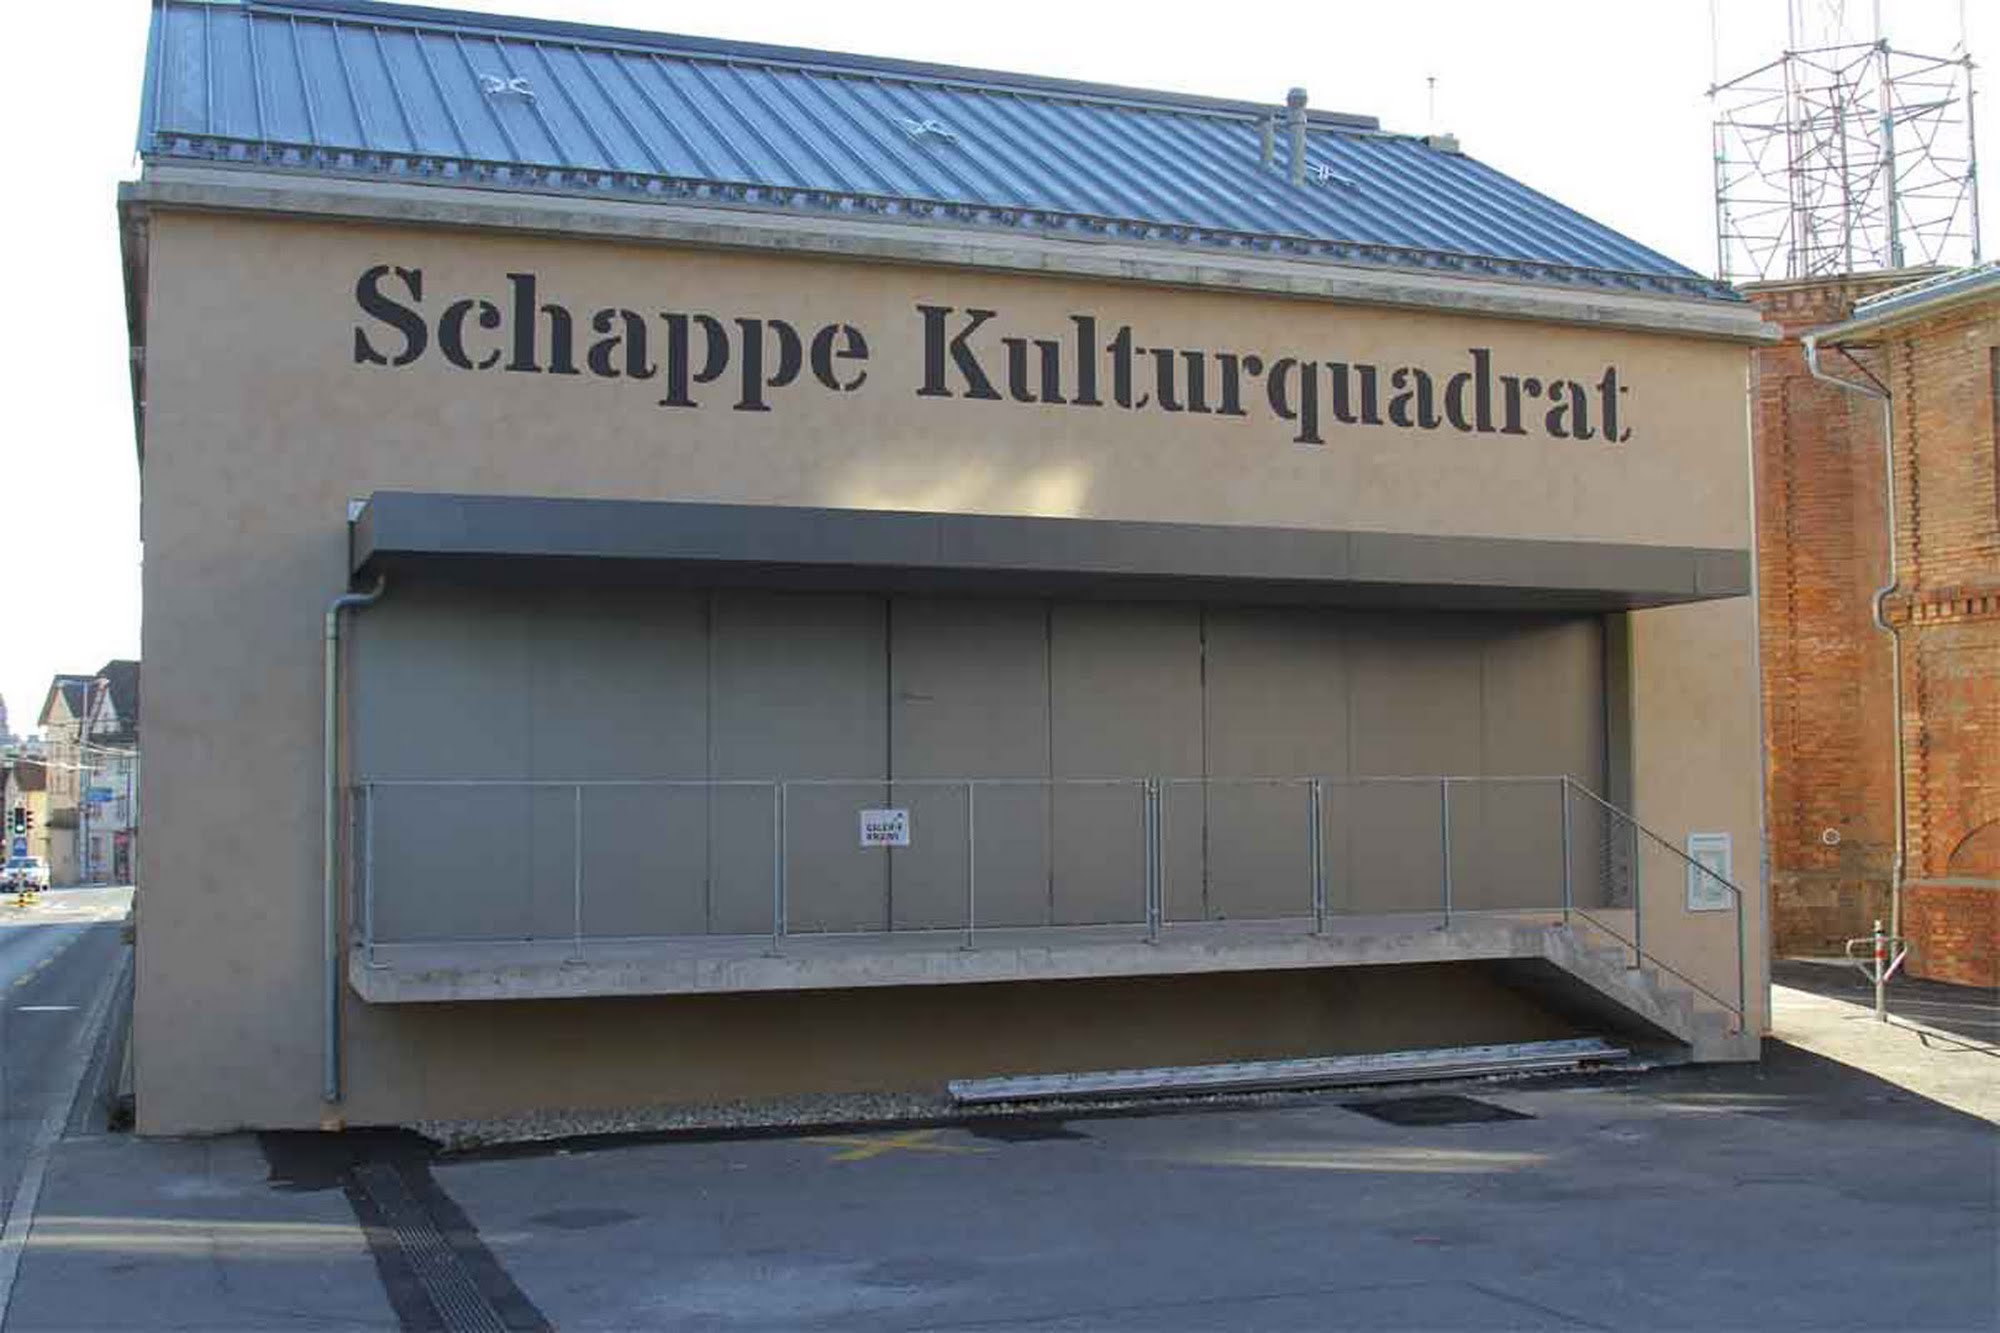 Schappe Kulturquadrat, Kriens